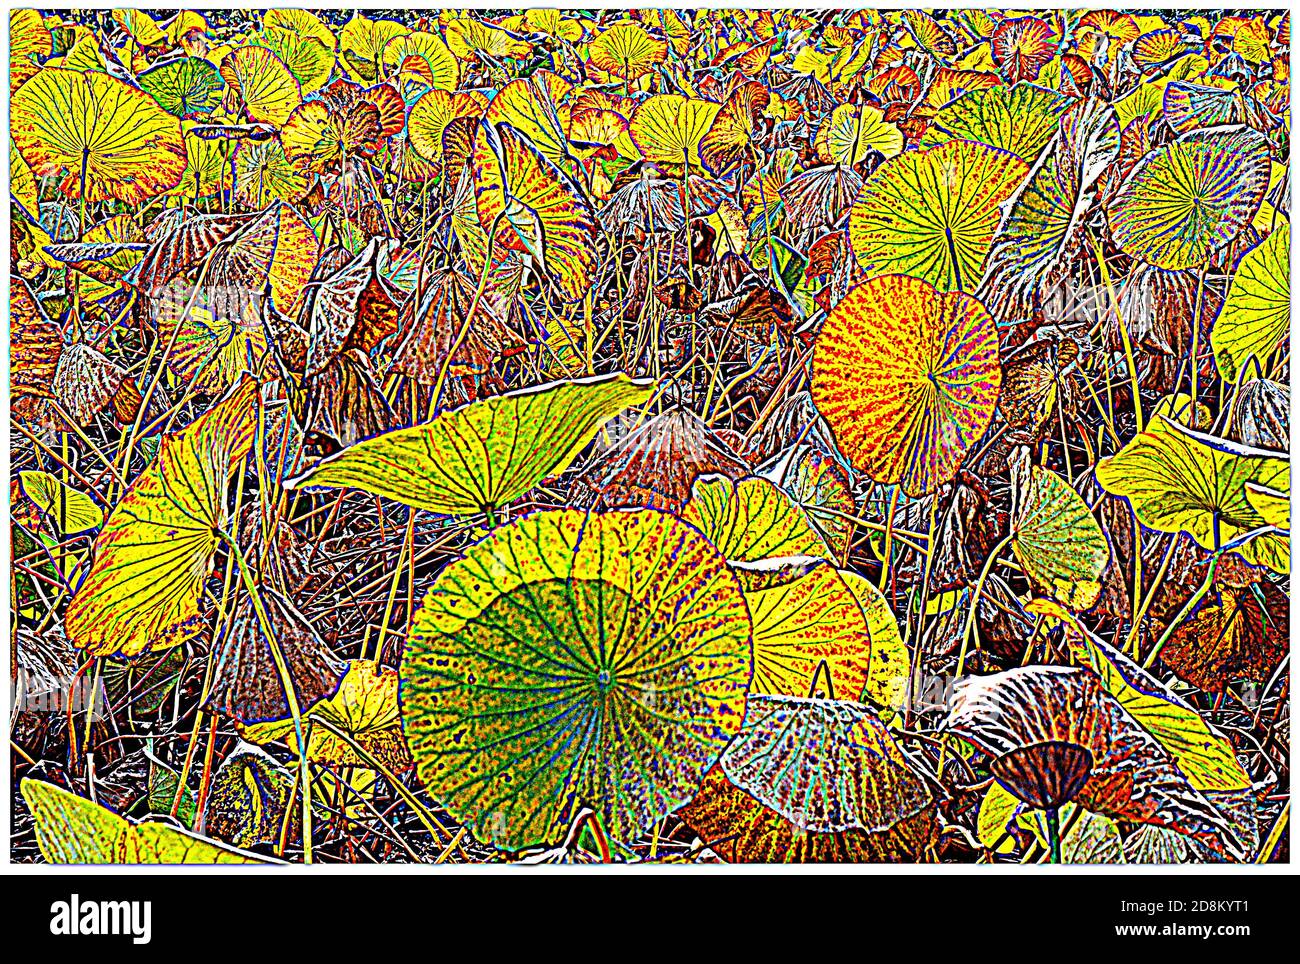 Su uno stagno, le foglie di loto, dopo il periodo di fioritura, stanno cambiando di colori, questa foto ritoccata sembra un disegno. Foto Stock